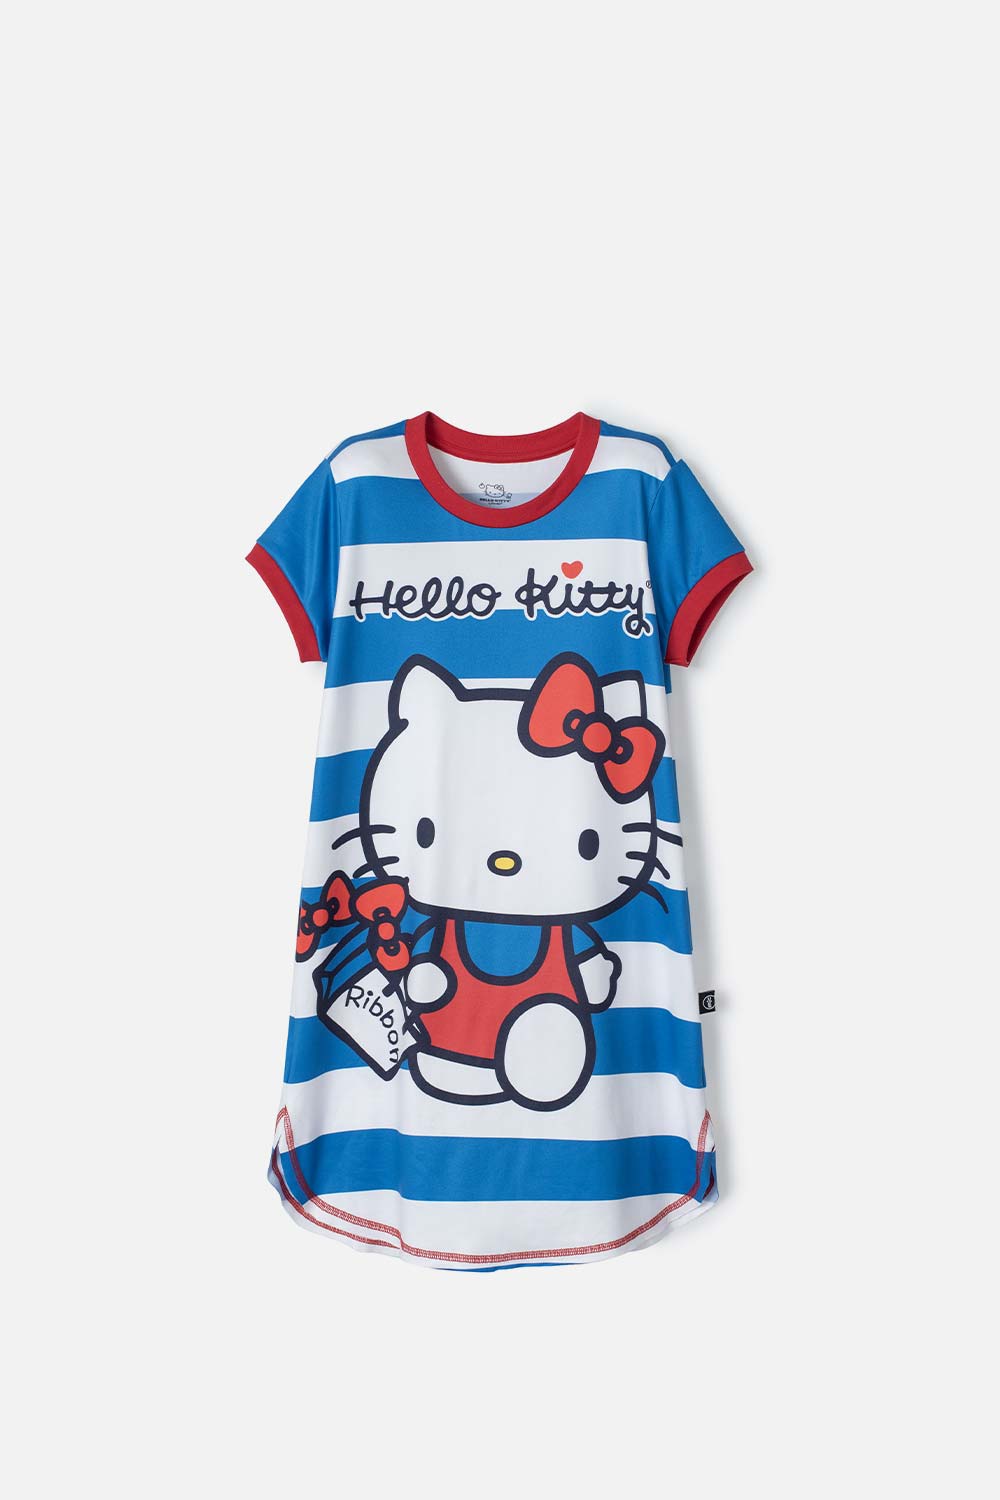 Pijama de Hello Kitty multicolor tipo batola para niña 4-0